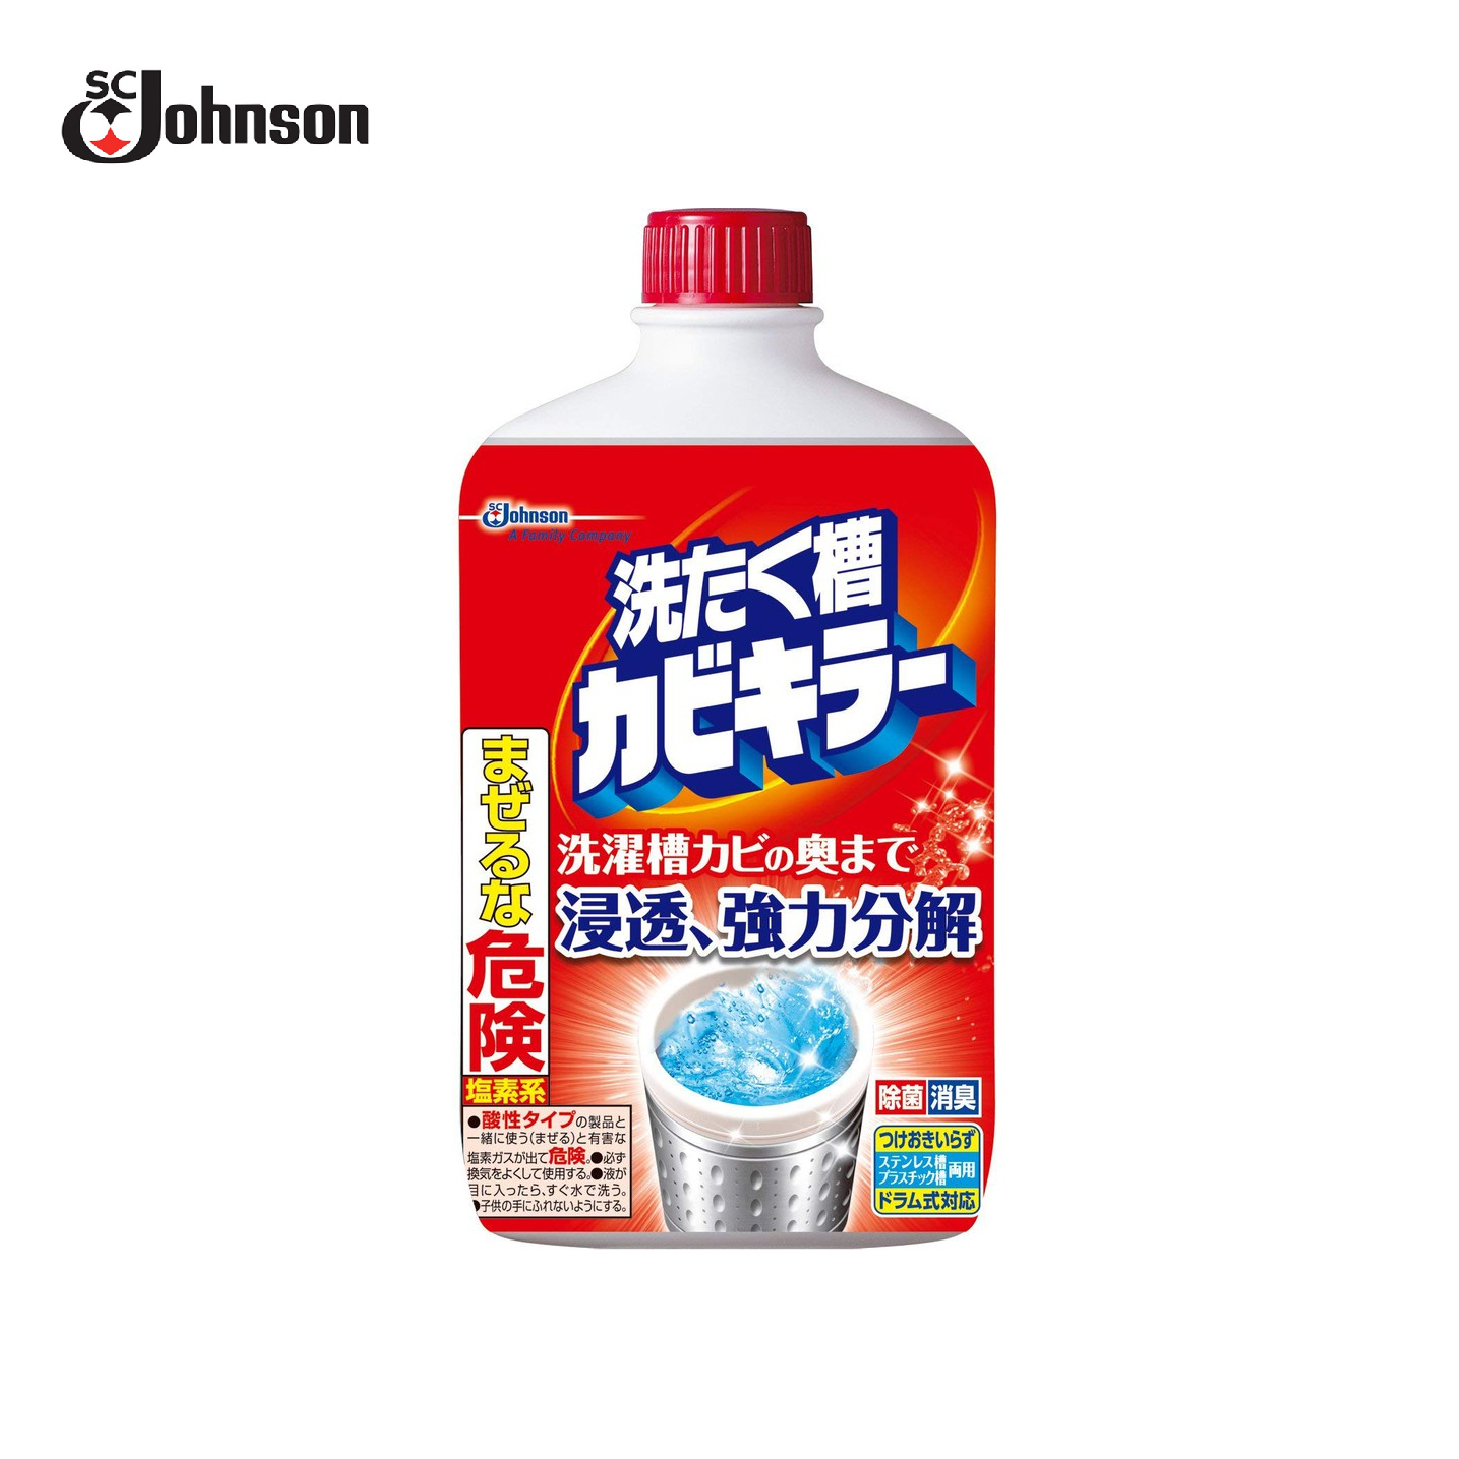 SC Johnson | 洗衣槽高级清洁剂 | 550g